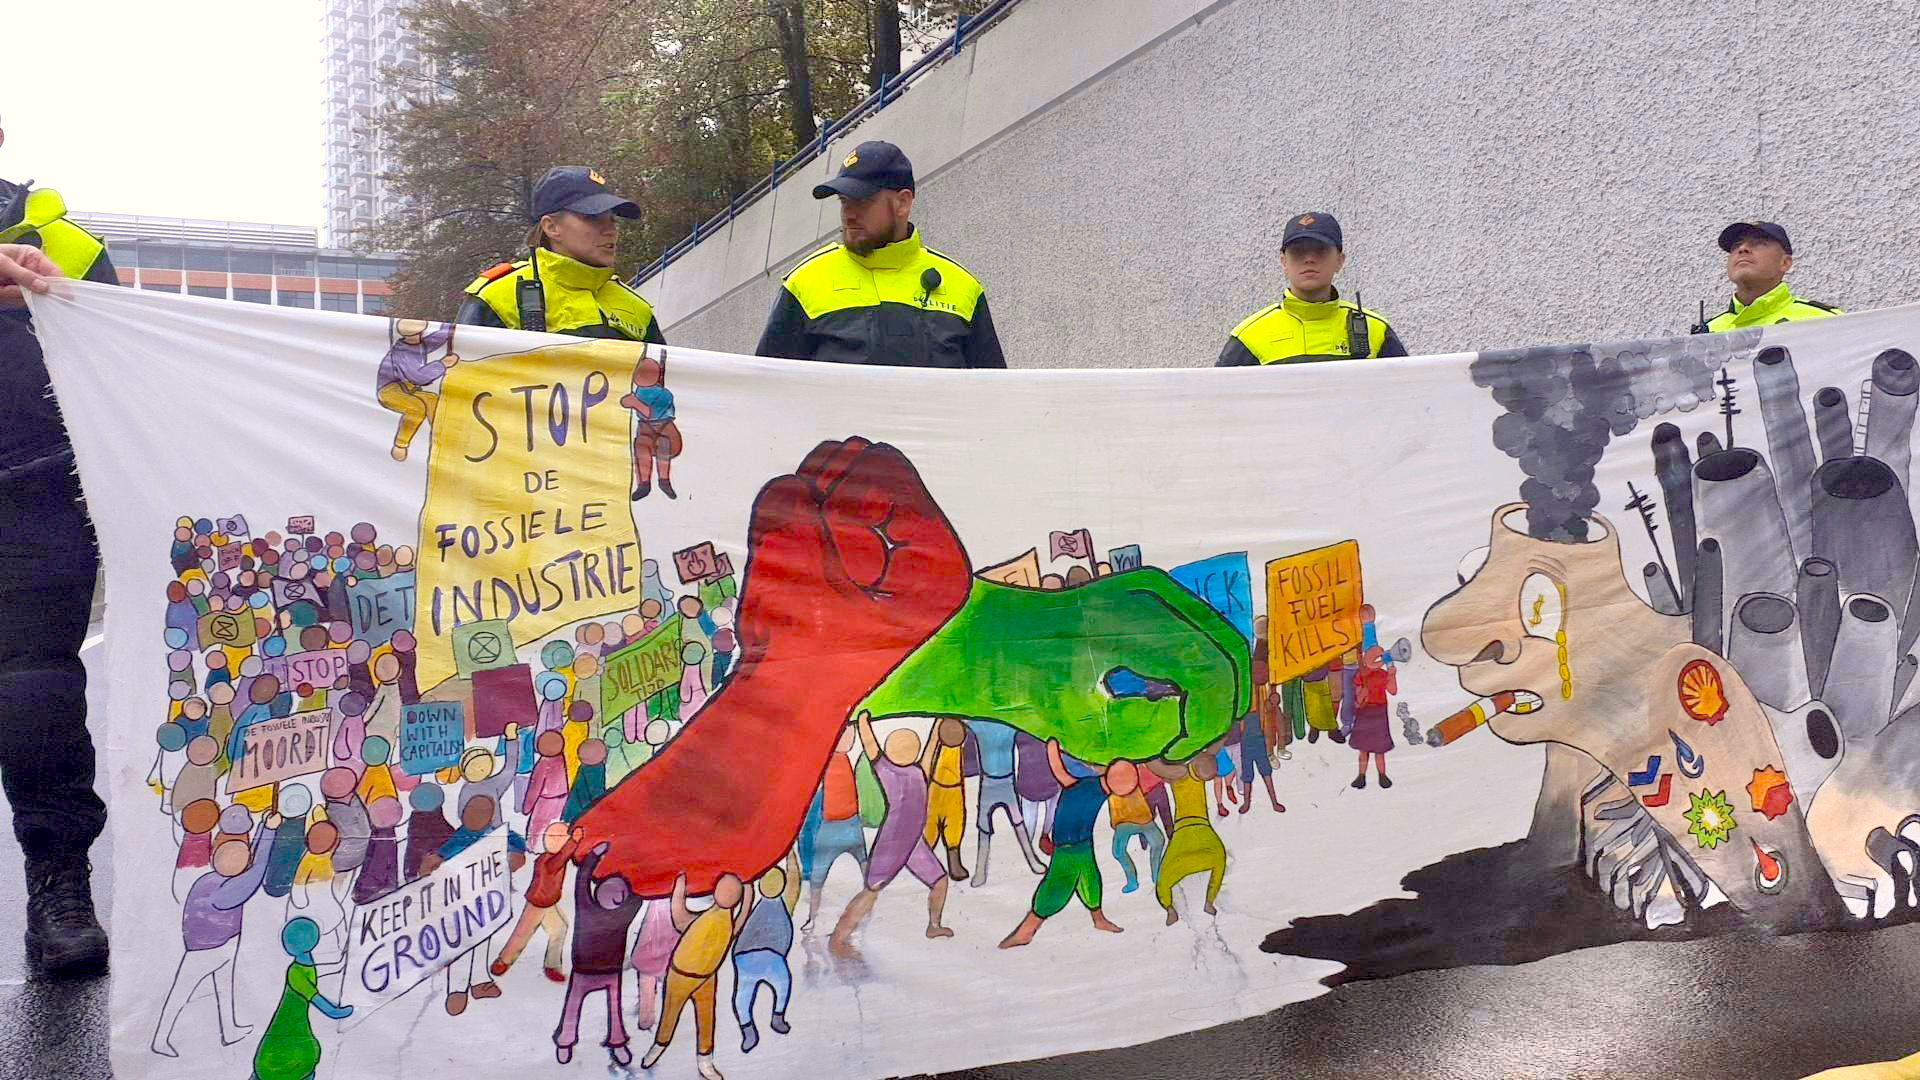 banner met tekst tegen de fosiele industrie staat voor een rij van politie agenten